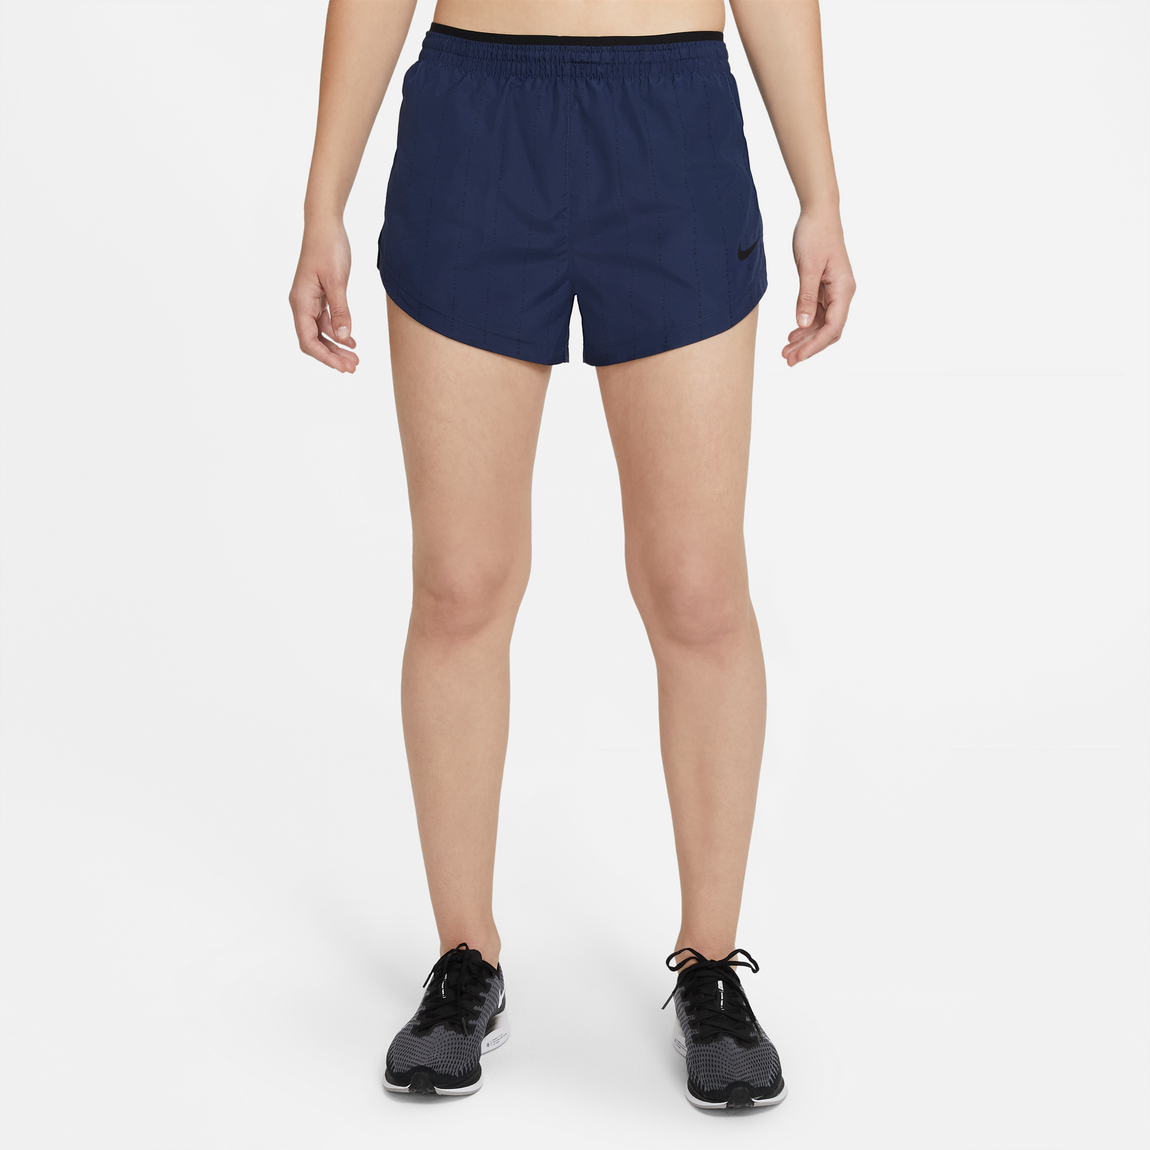 Nike Women's Dri-Fit Tempo Luxe Icon Clash Shorts (Midnight Navy/Black) - Nike Women's Dri-Fit Tempo Luxe Icon Clash Shorts (Midnight Navy/Black) - 